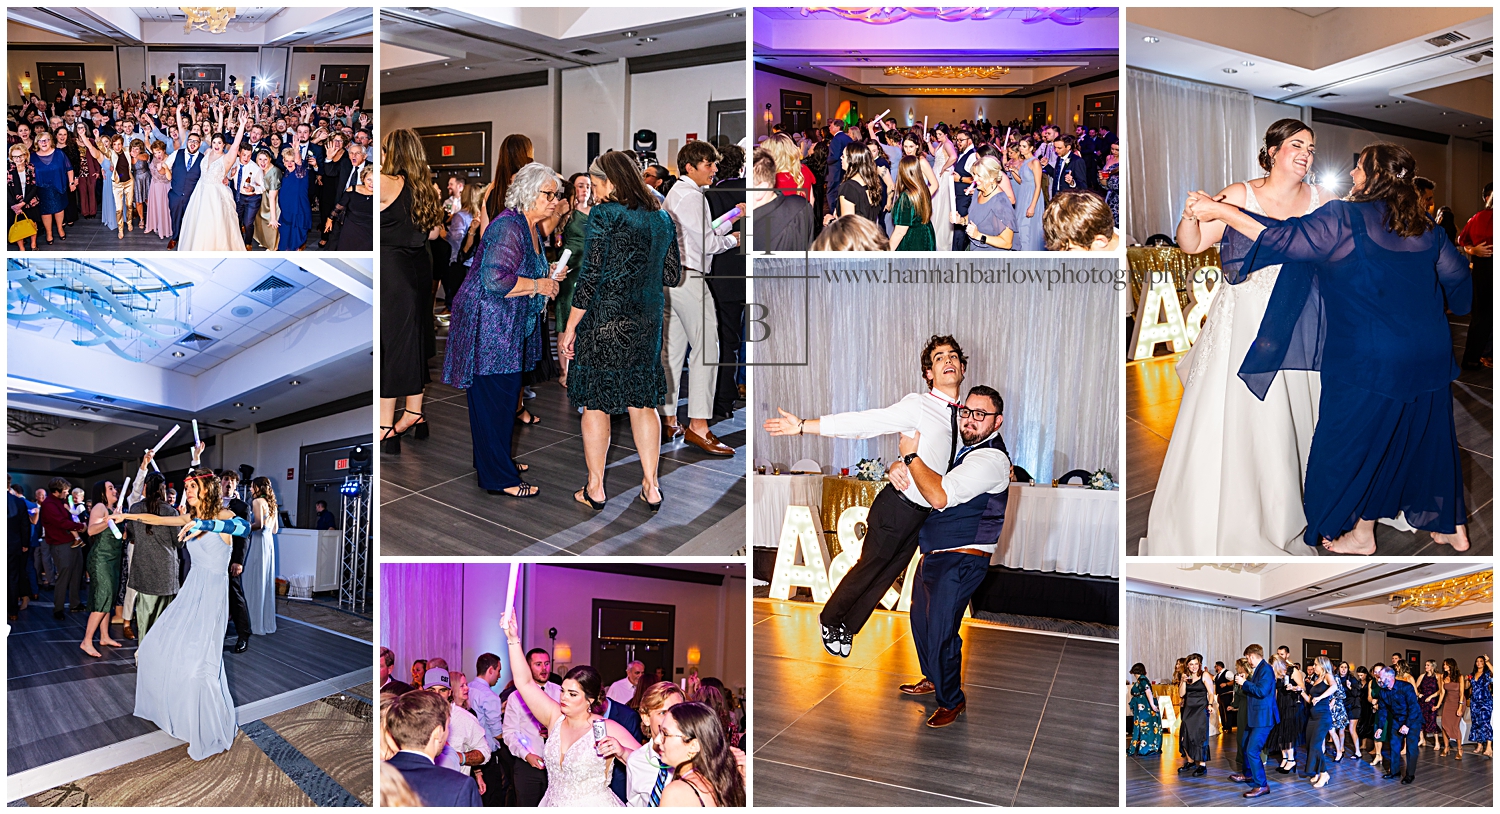 Open dance floor photos are highlight at ballroom wedding.